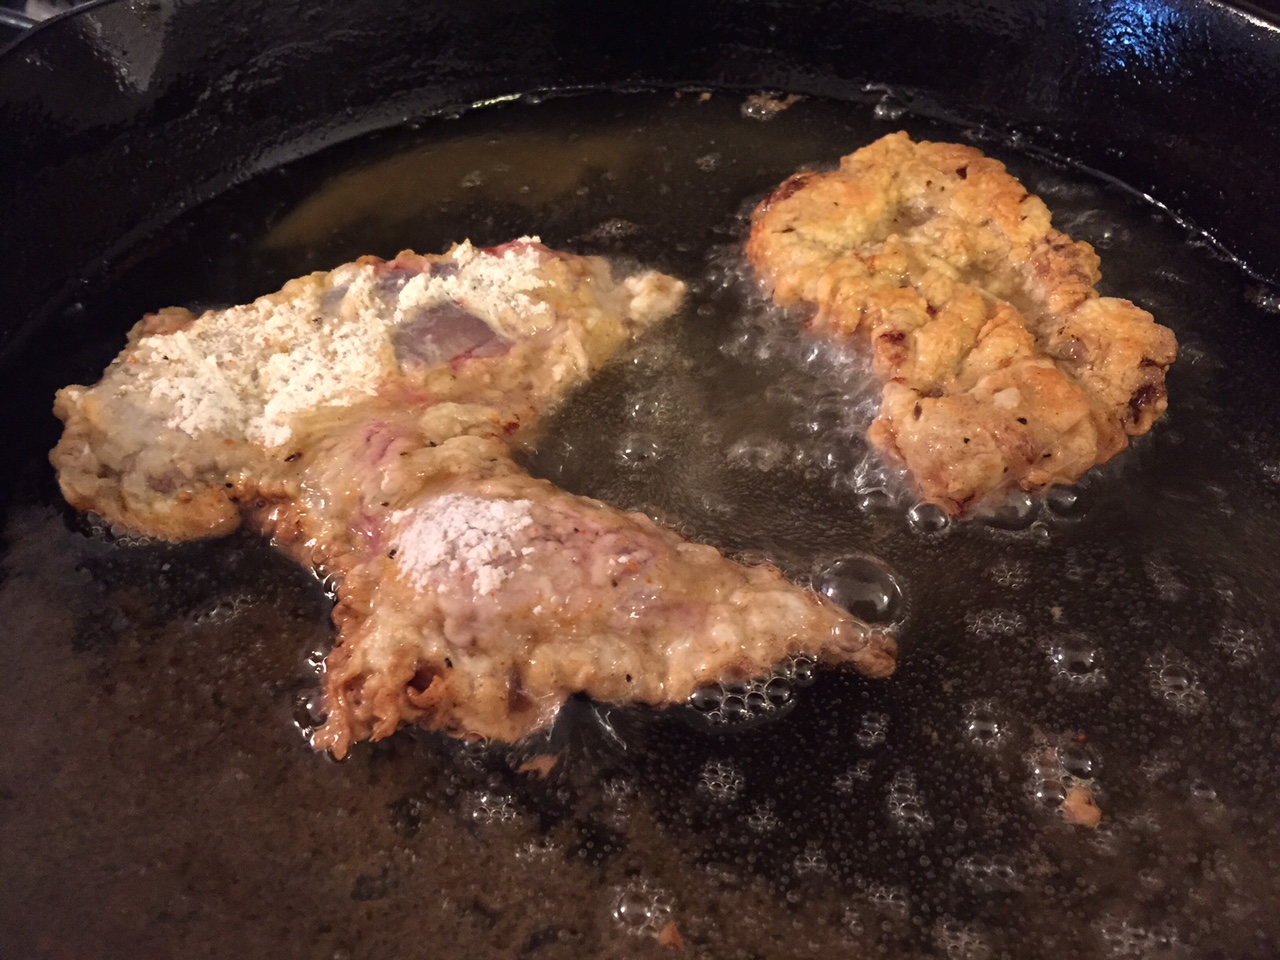 Chicken-fried steak in Texas with venison twist